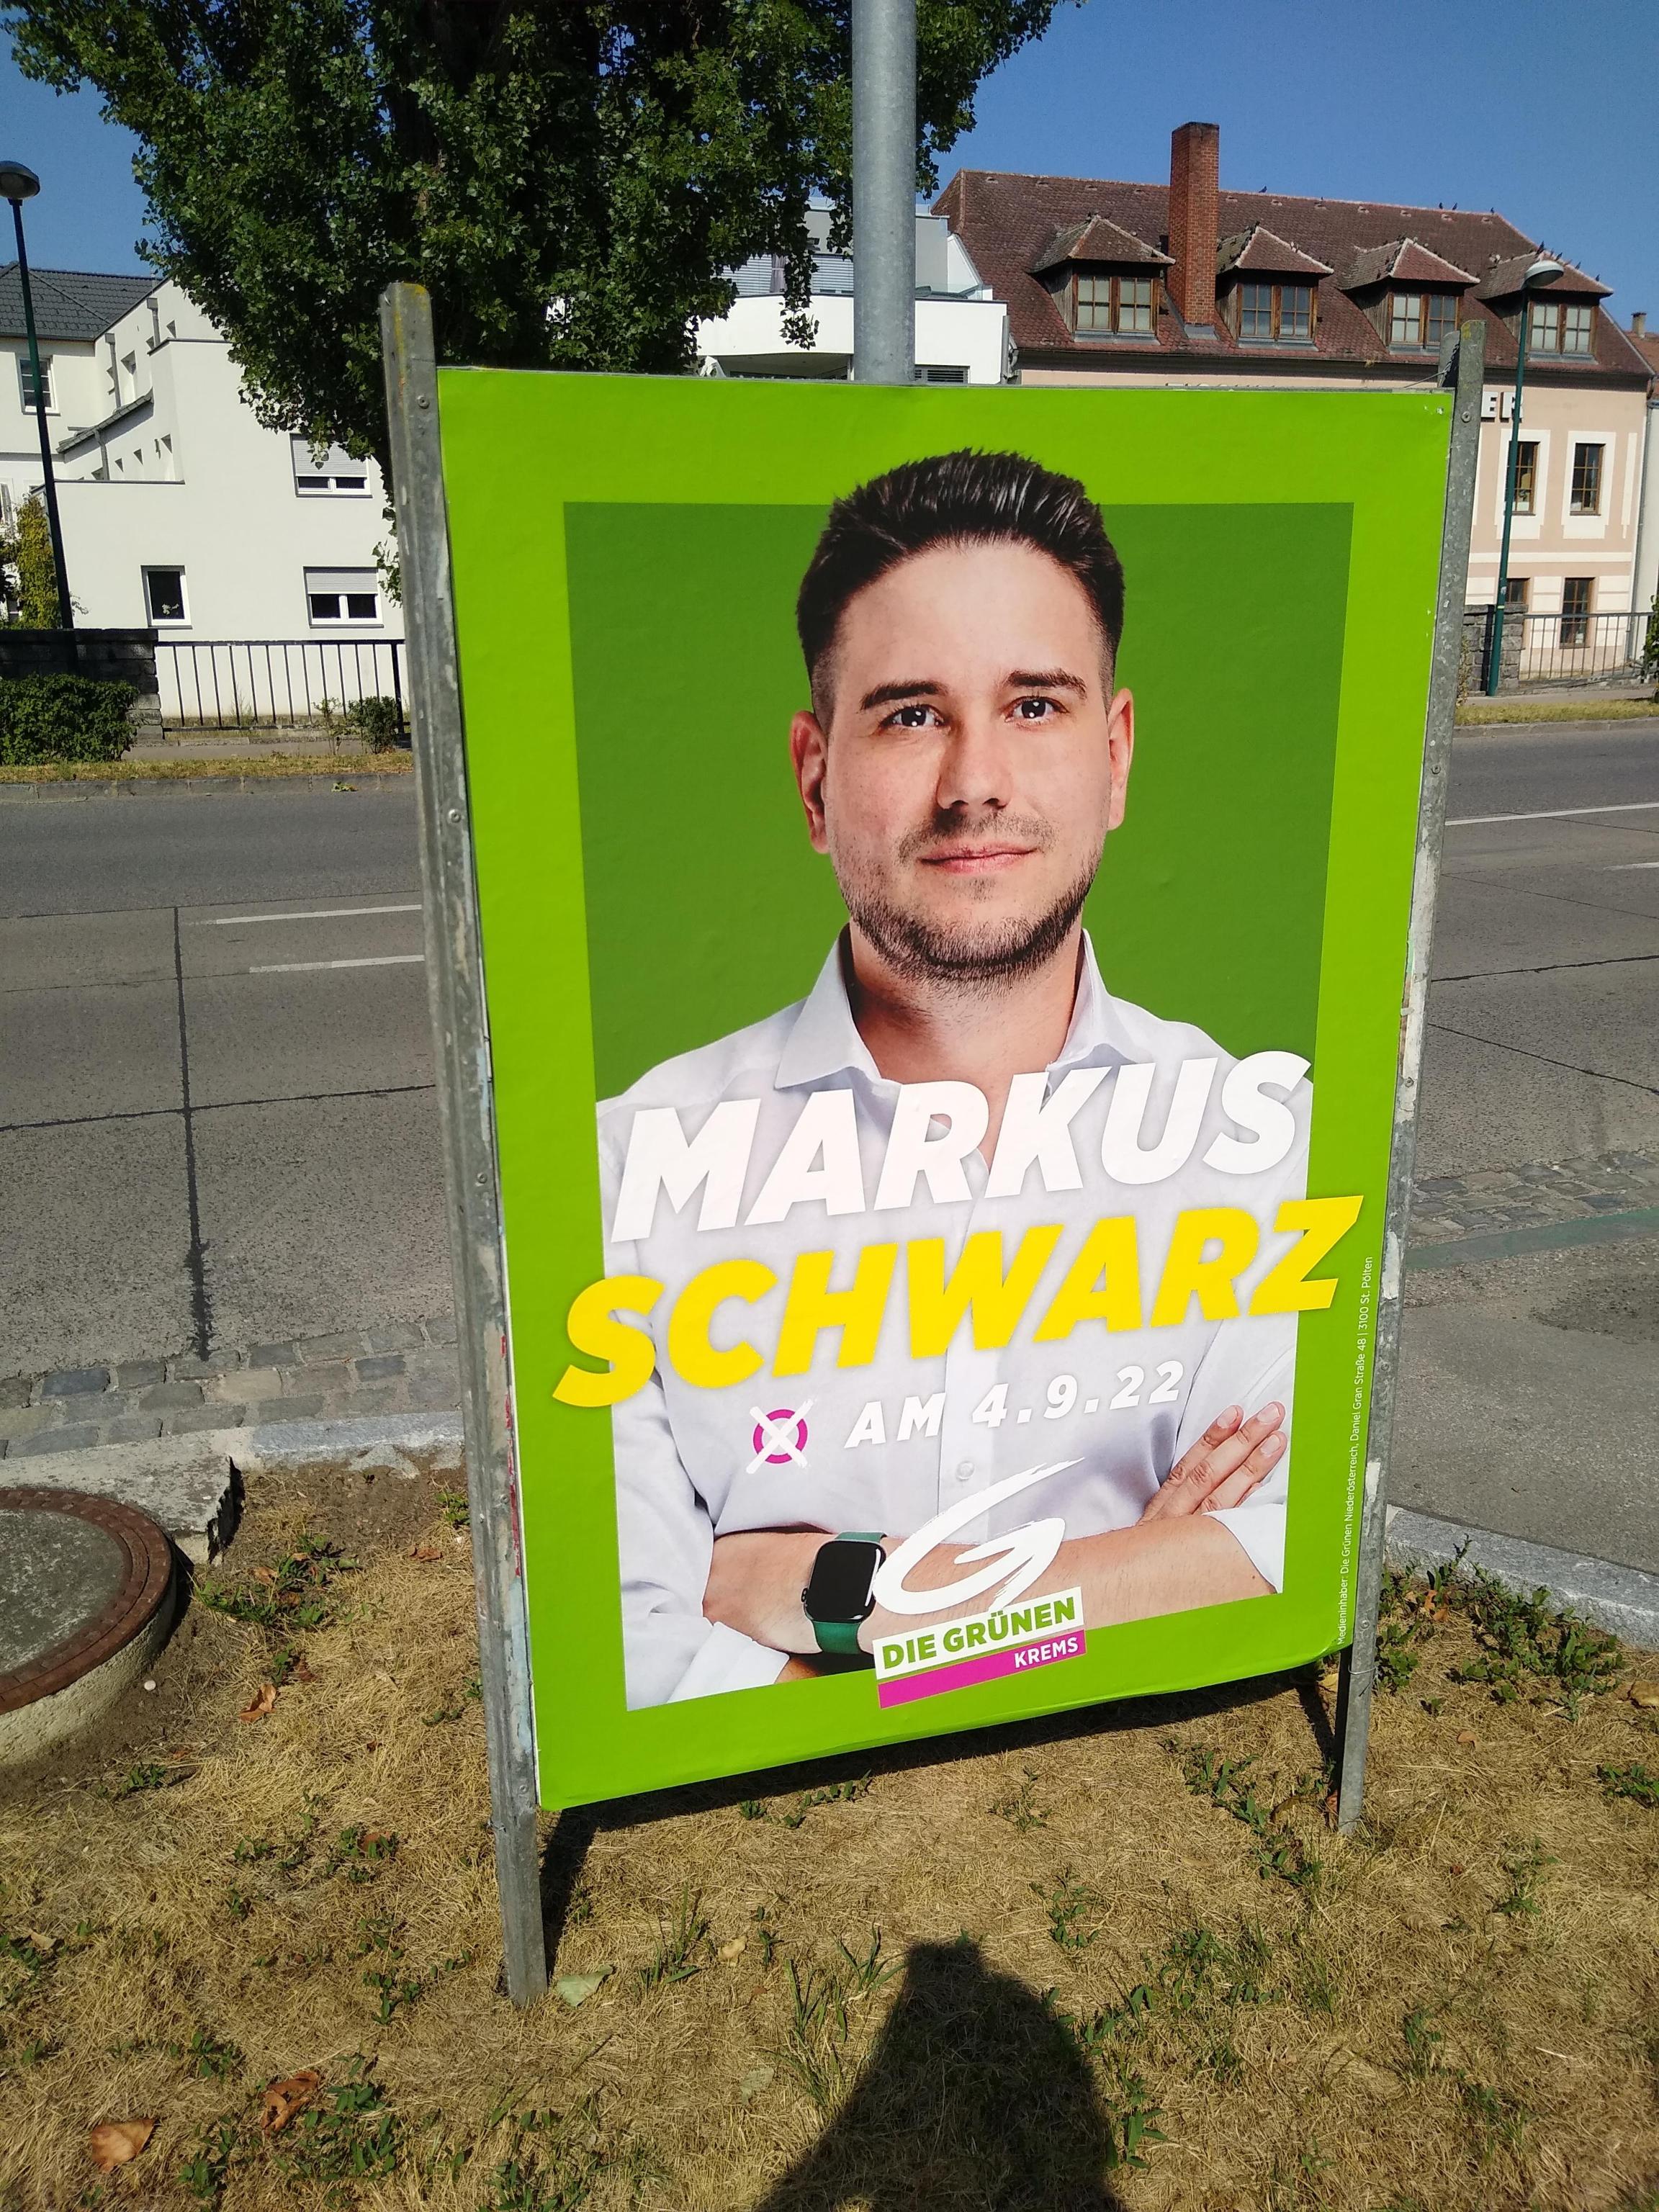 Ich finde, dass dies die Krone des unnötigsten Wahlplakats 2022 verdient. Es sagt mir dass ich Markus Schwarz X-en soll am 04.09.2022. Aber warum soll ich das machen? Ich mach ja nicht etwas, nur weil’s auf einem Plakat steht…!